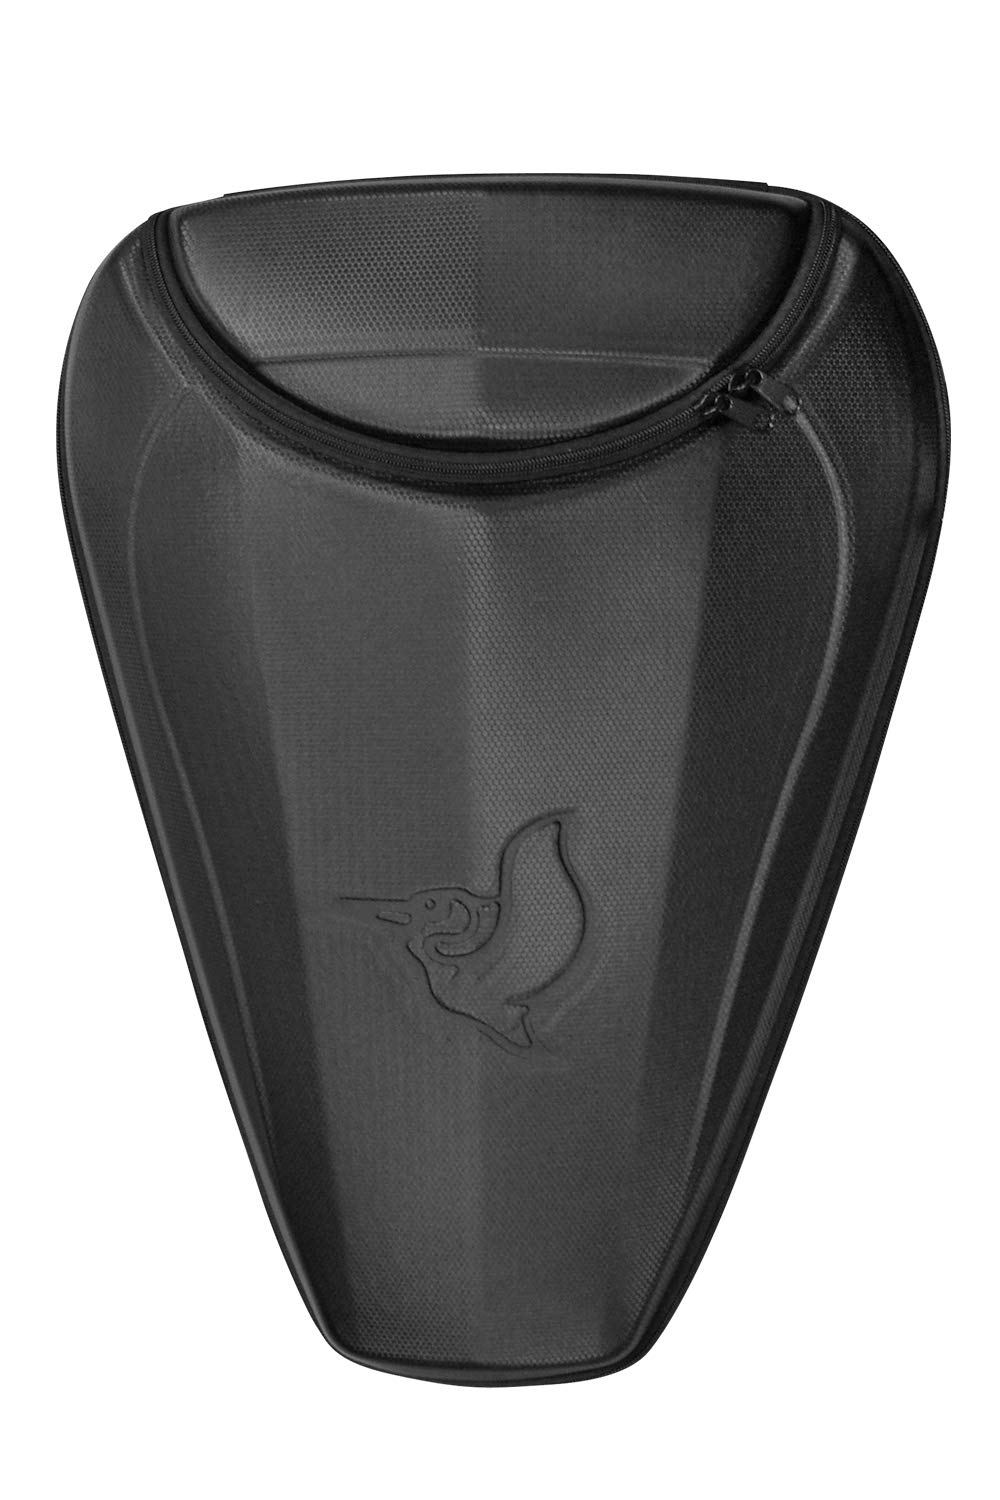 Pelican EXO-POD 17L Storage Compartment PS1501-1 Black